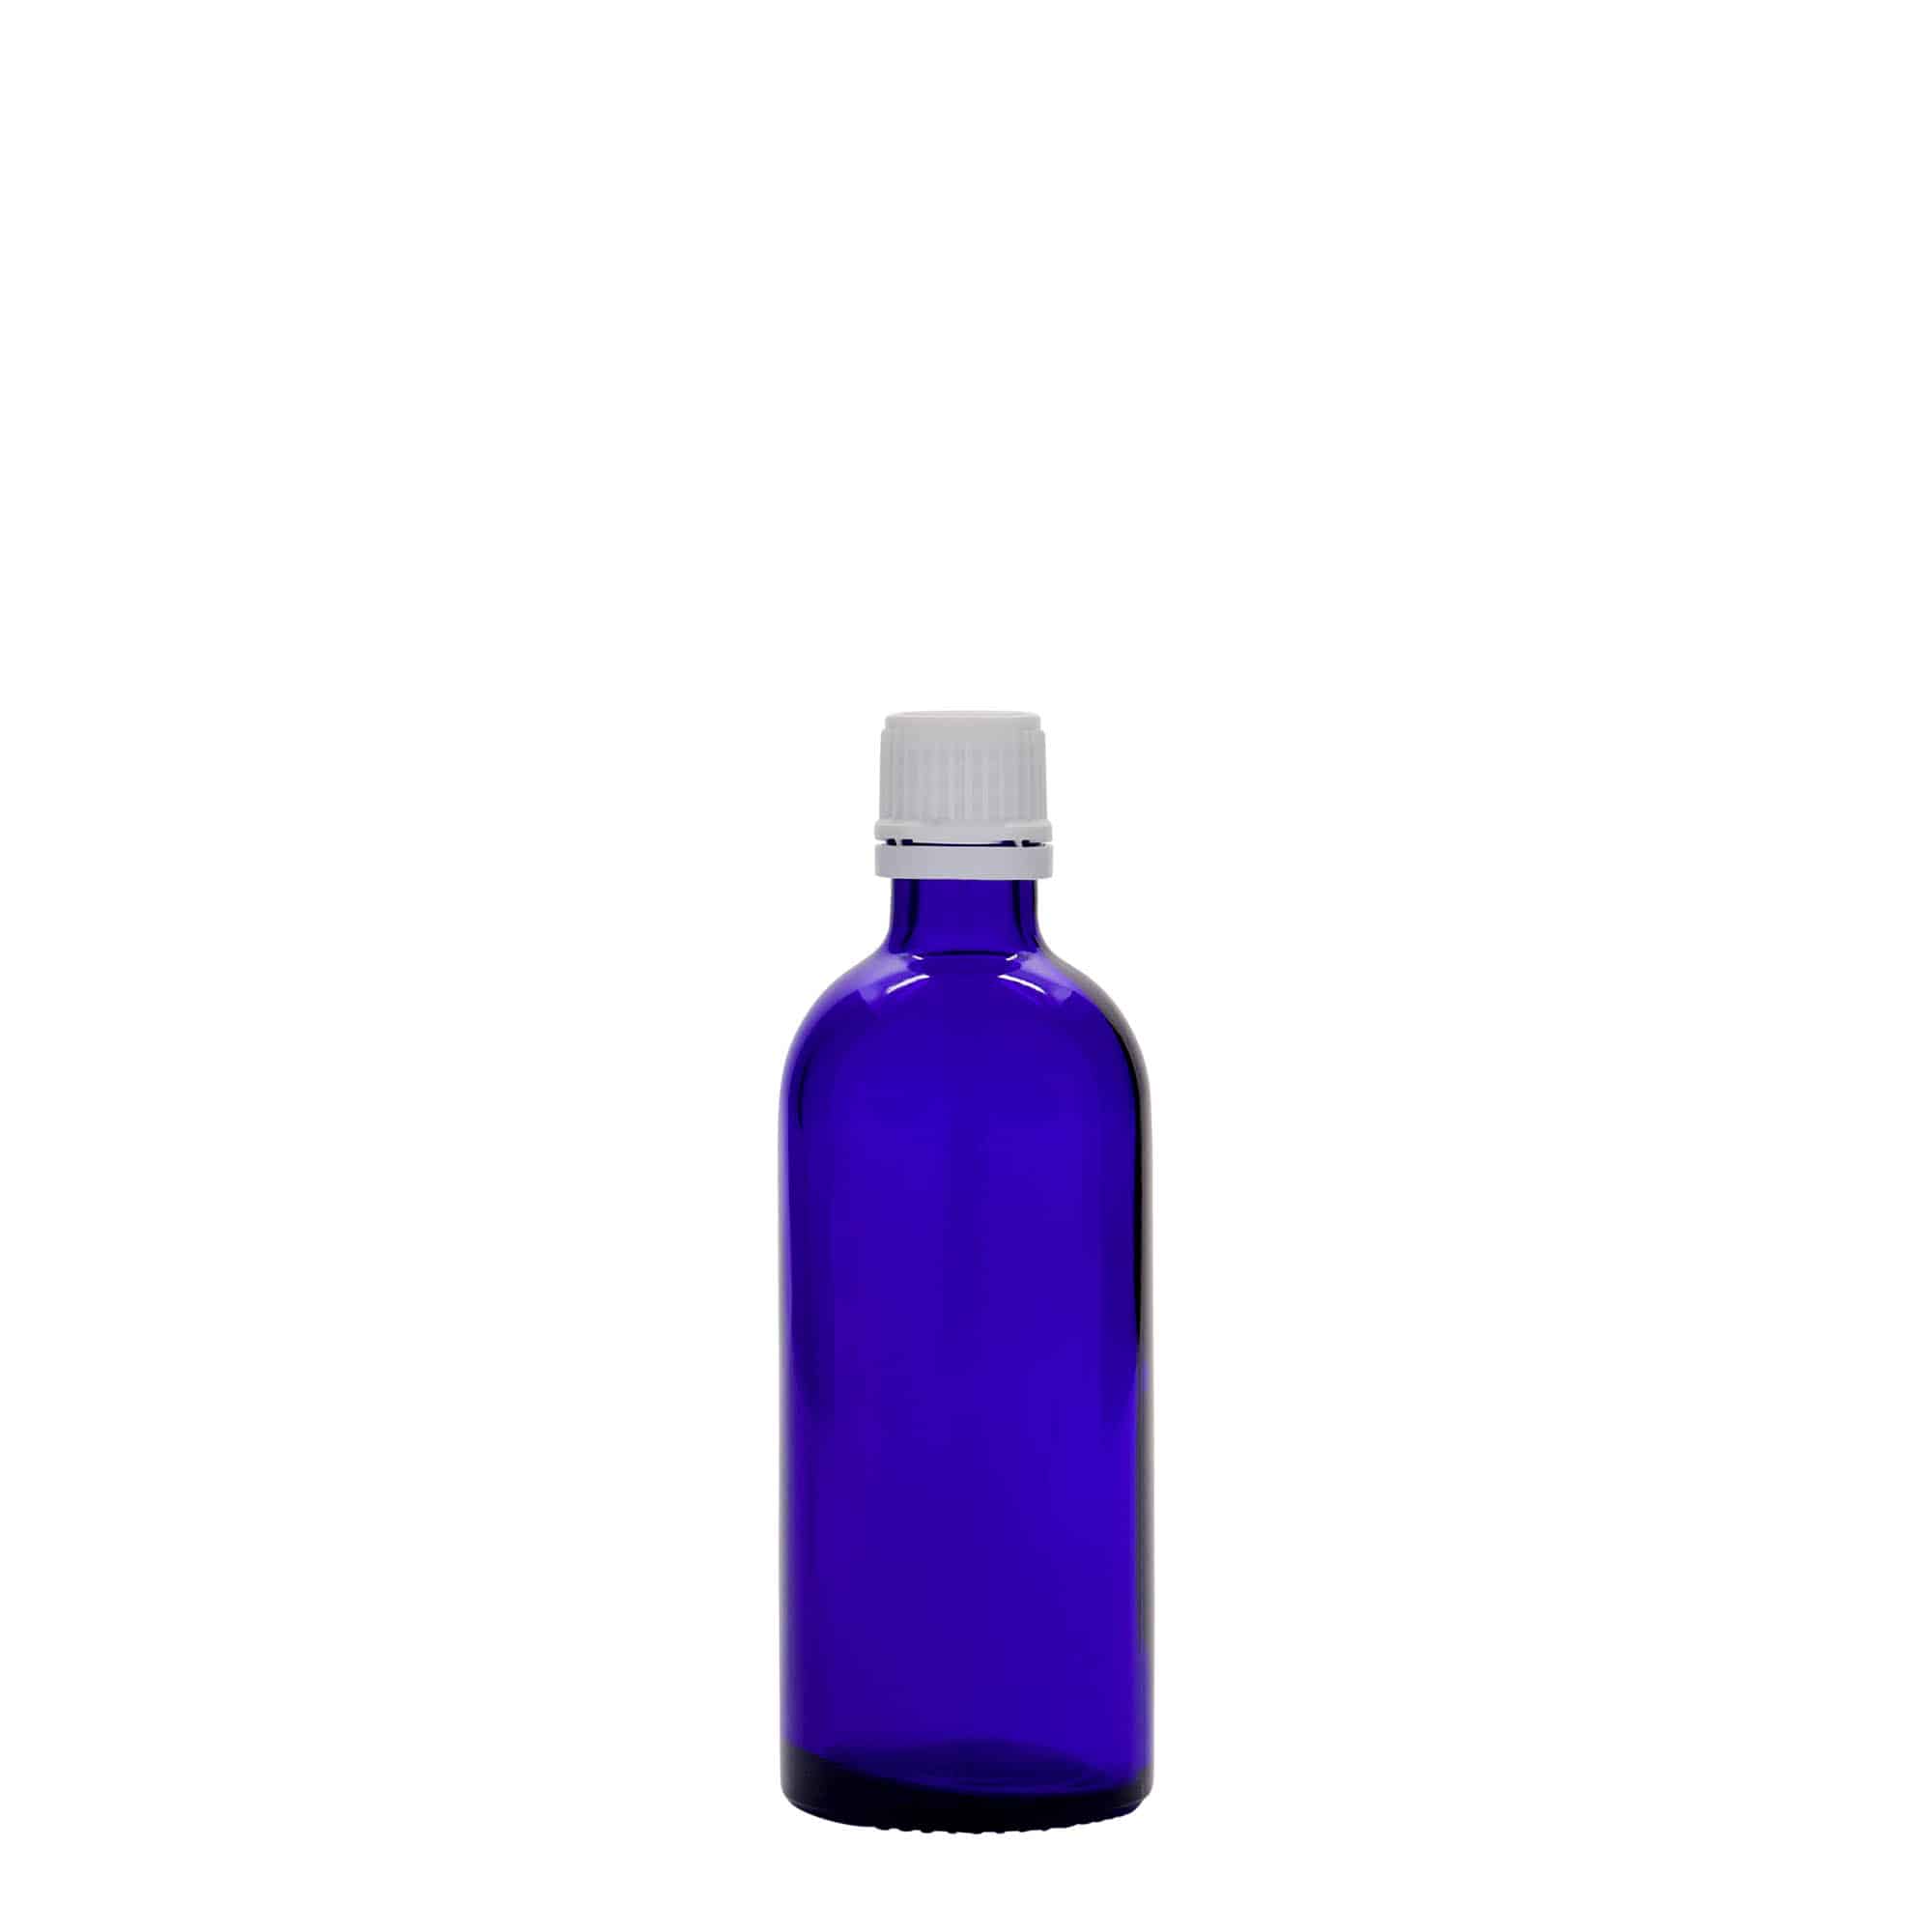 100 ml Flacone farmaceutico, vetro, blu reale, imboccatura: DIN 18